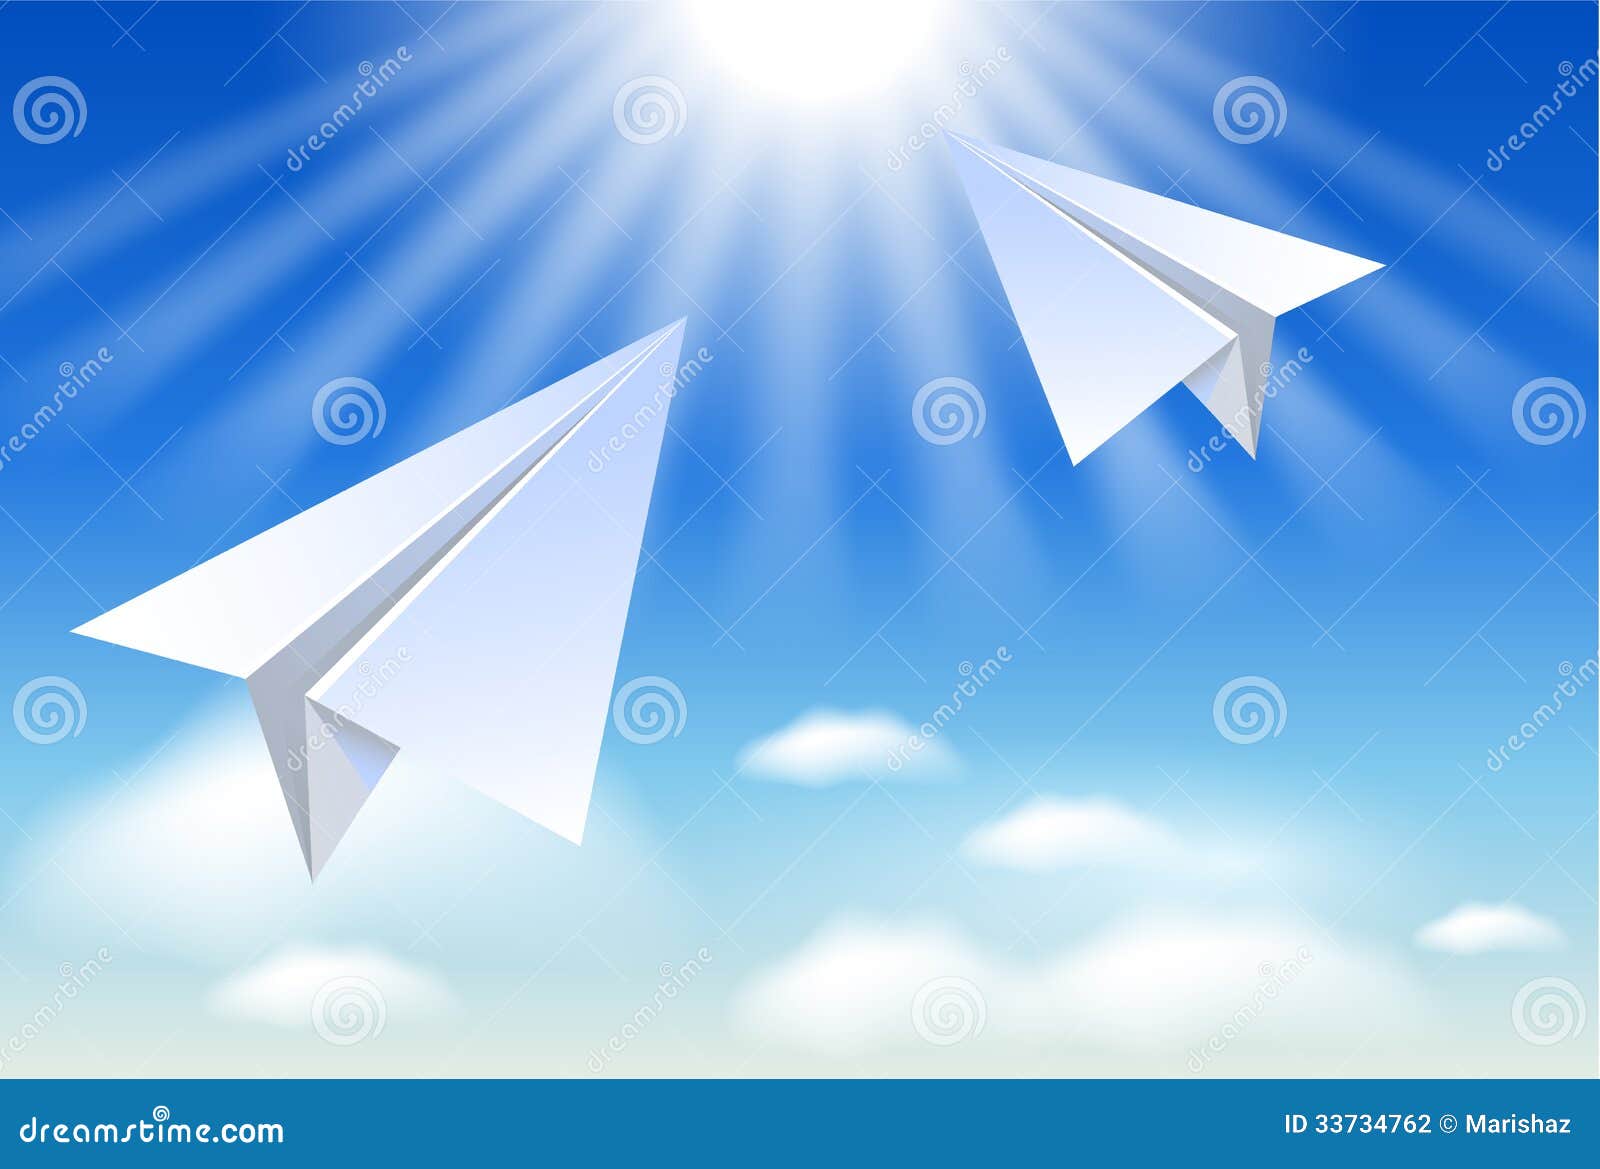 Мой бумажный самолет отправляется в полет. Бумажный самолетик. Бумажный самолет в небе. Бумажный самолетик в небе. Бумажные самолетики в небе летают.